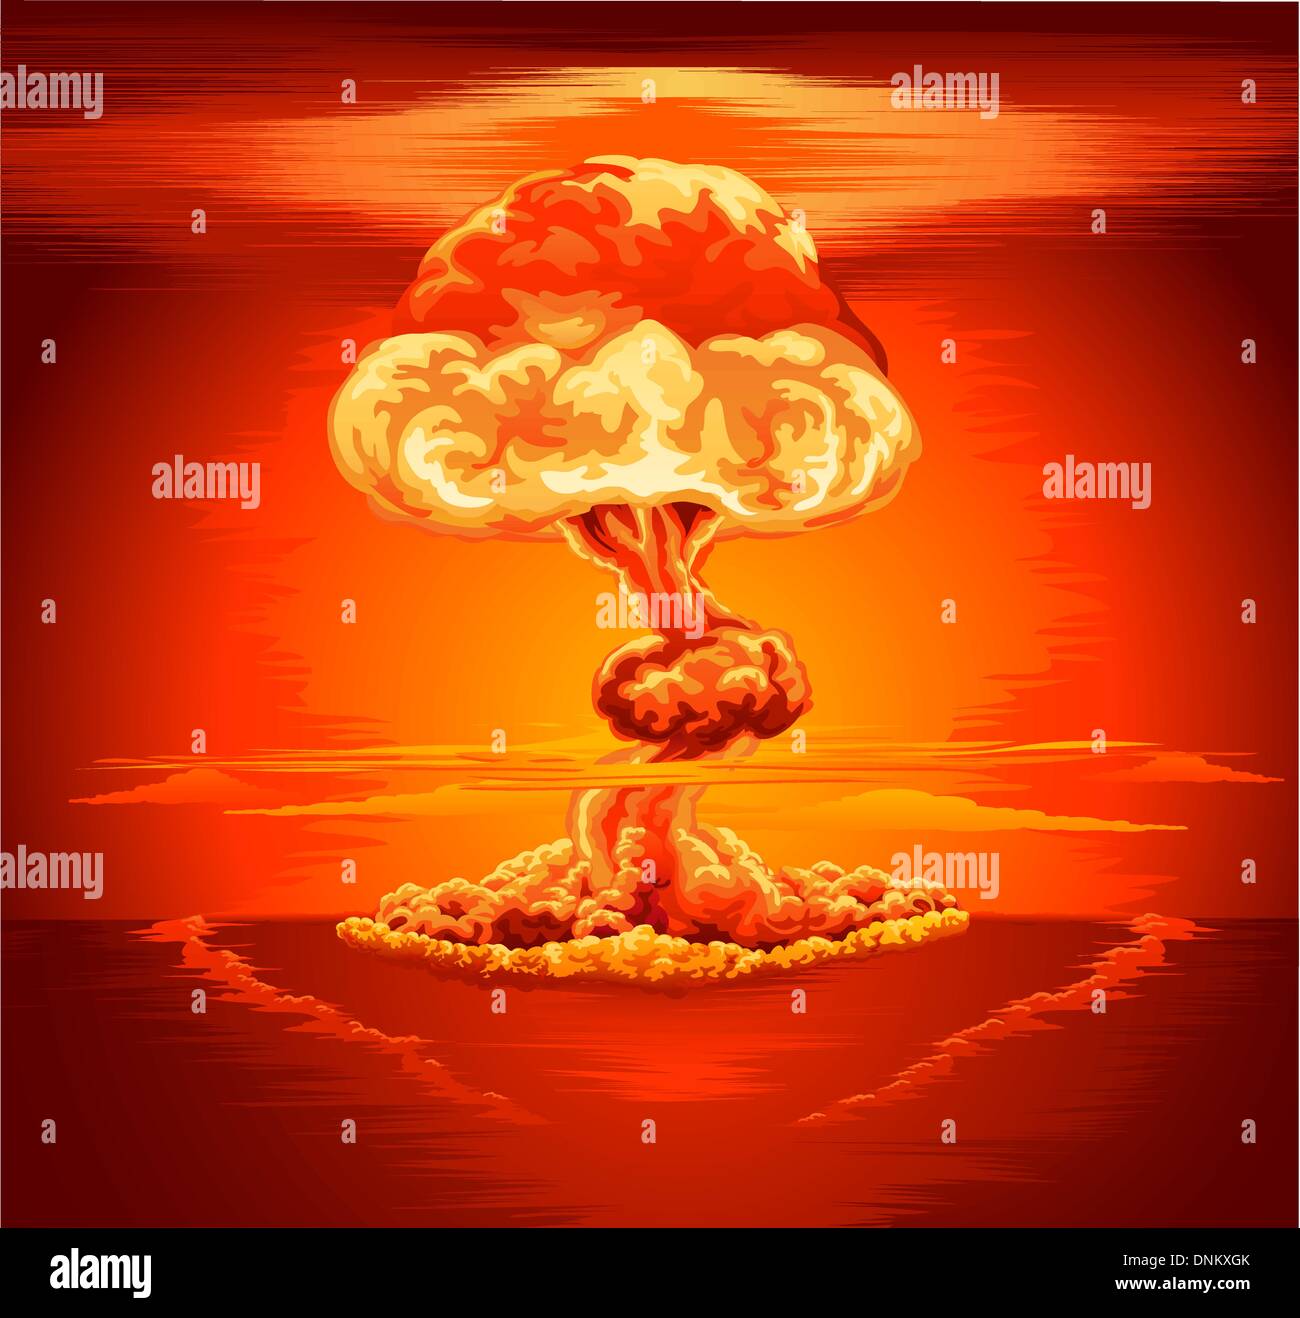 Illustrazione di un fungo il cloud a seguito di una esplosione nucleare Illustrazione Vettoriale